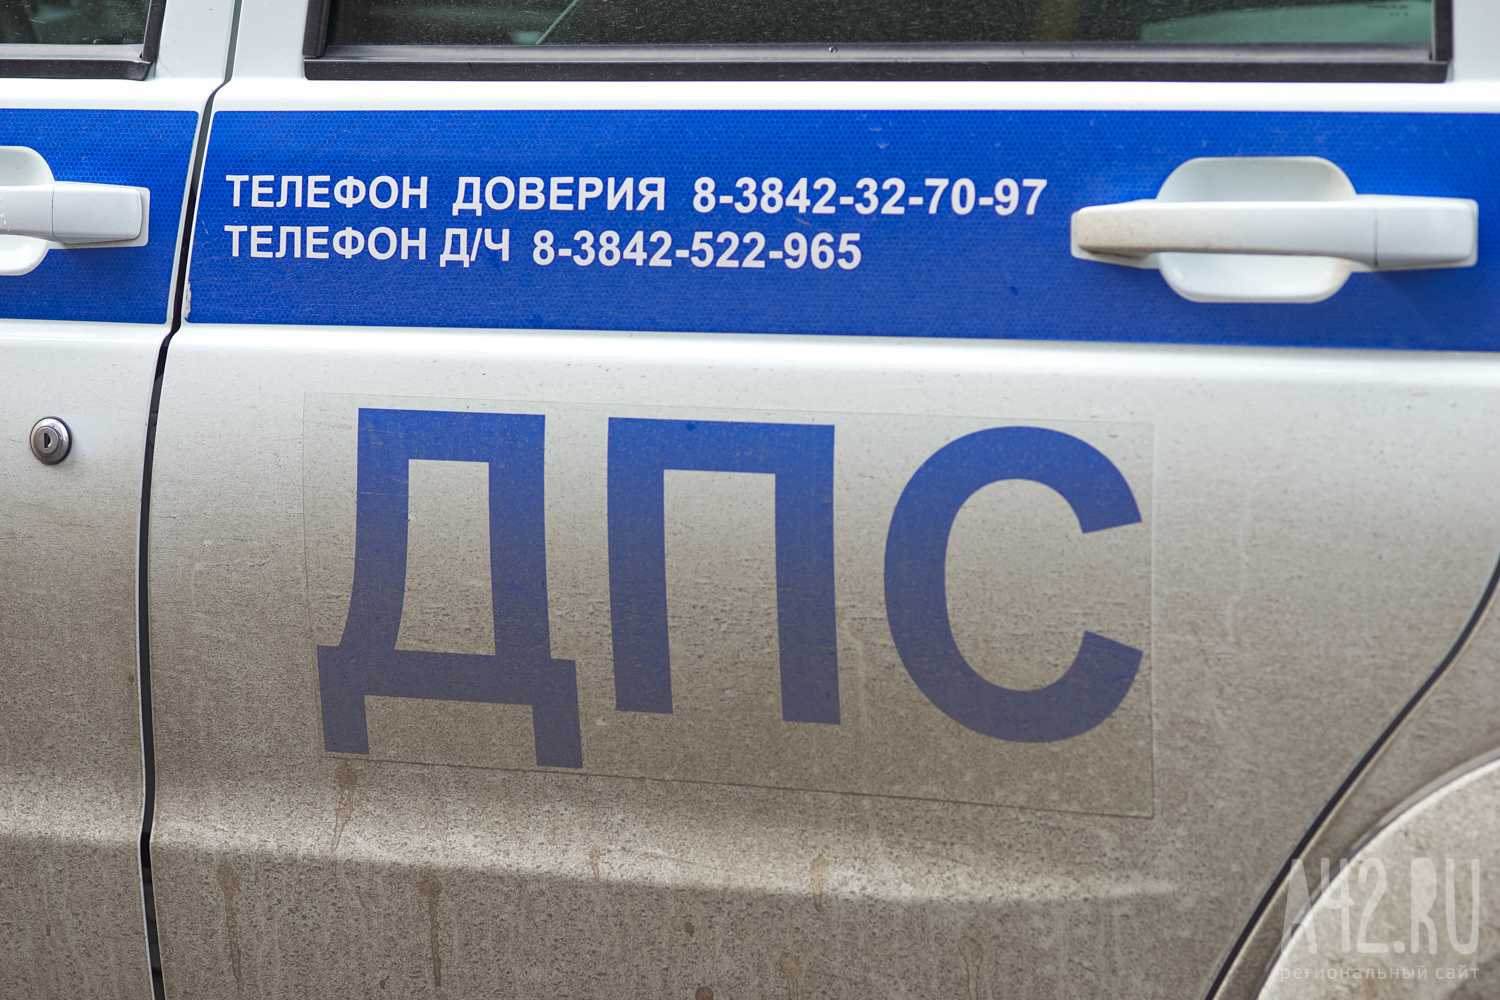 На Урале пьяный водитель иномарки врезался в остановку. Есть пострадавшие 